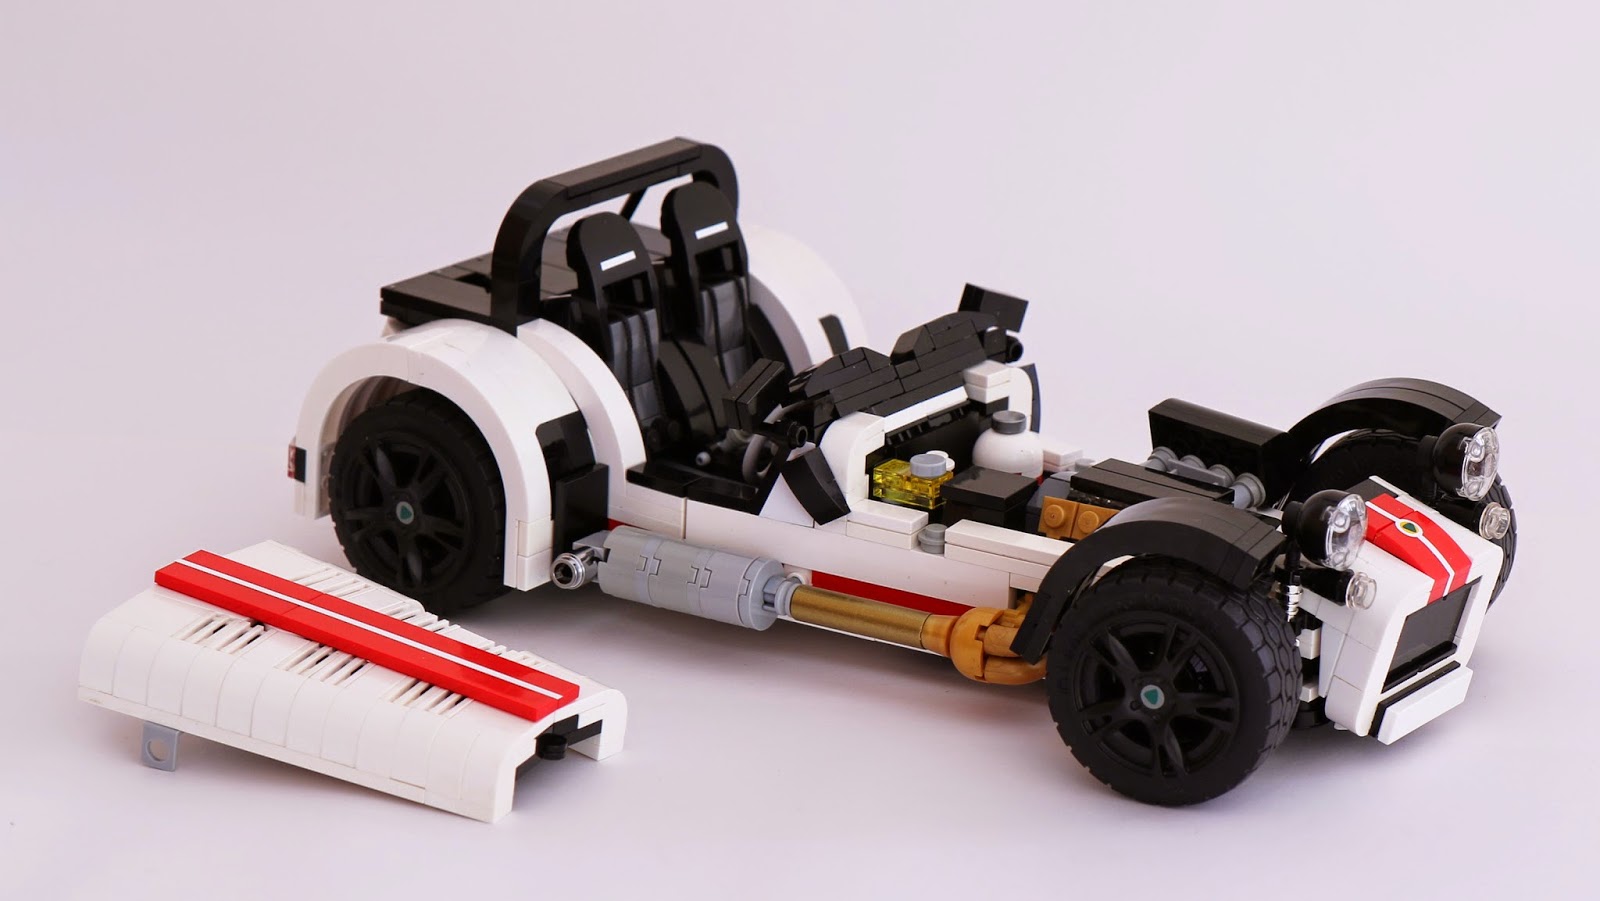 A Lego Caterham R500!